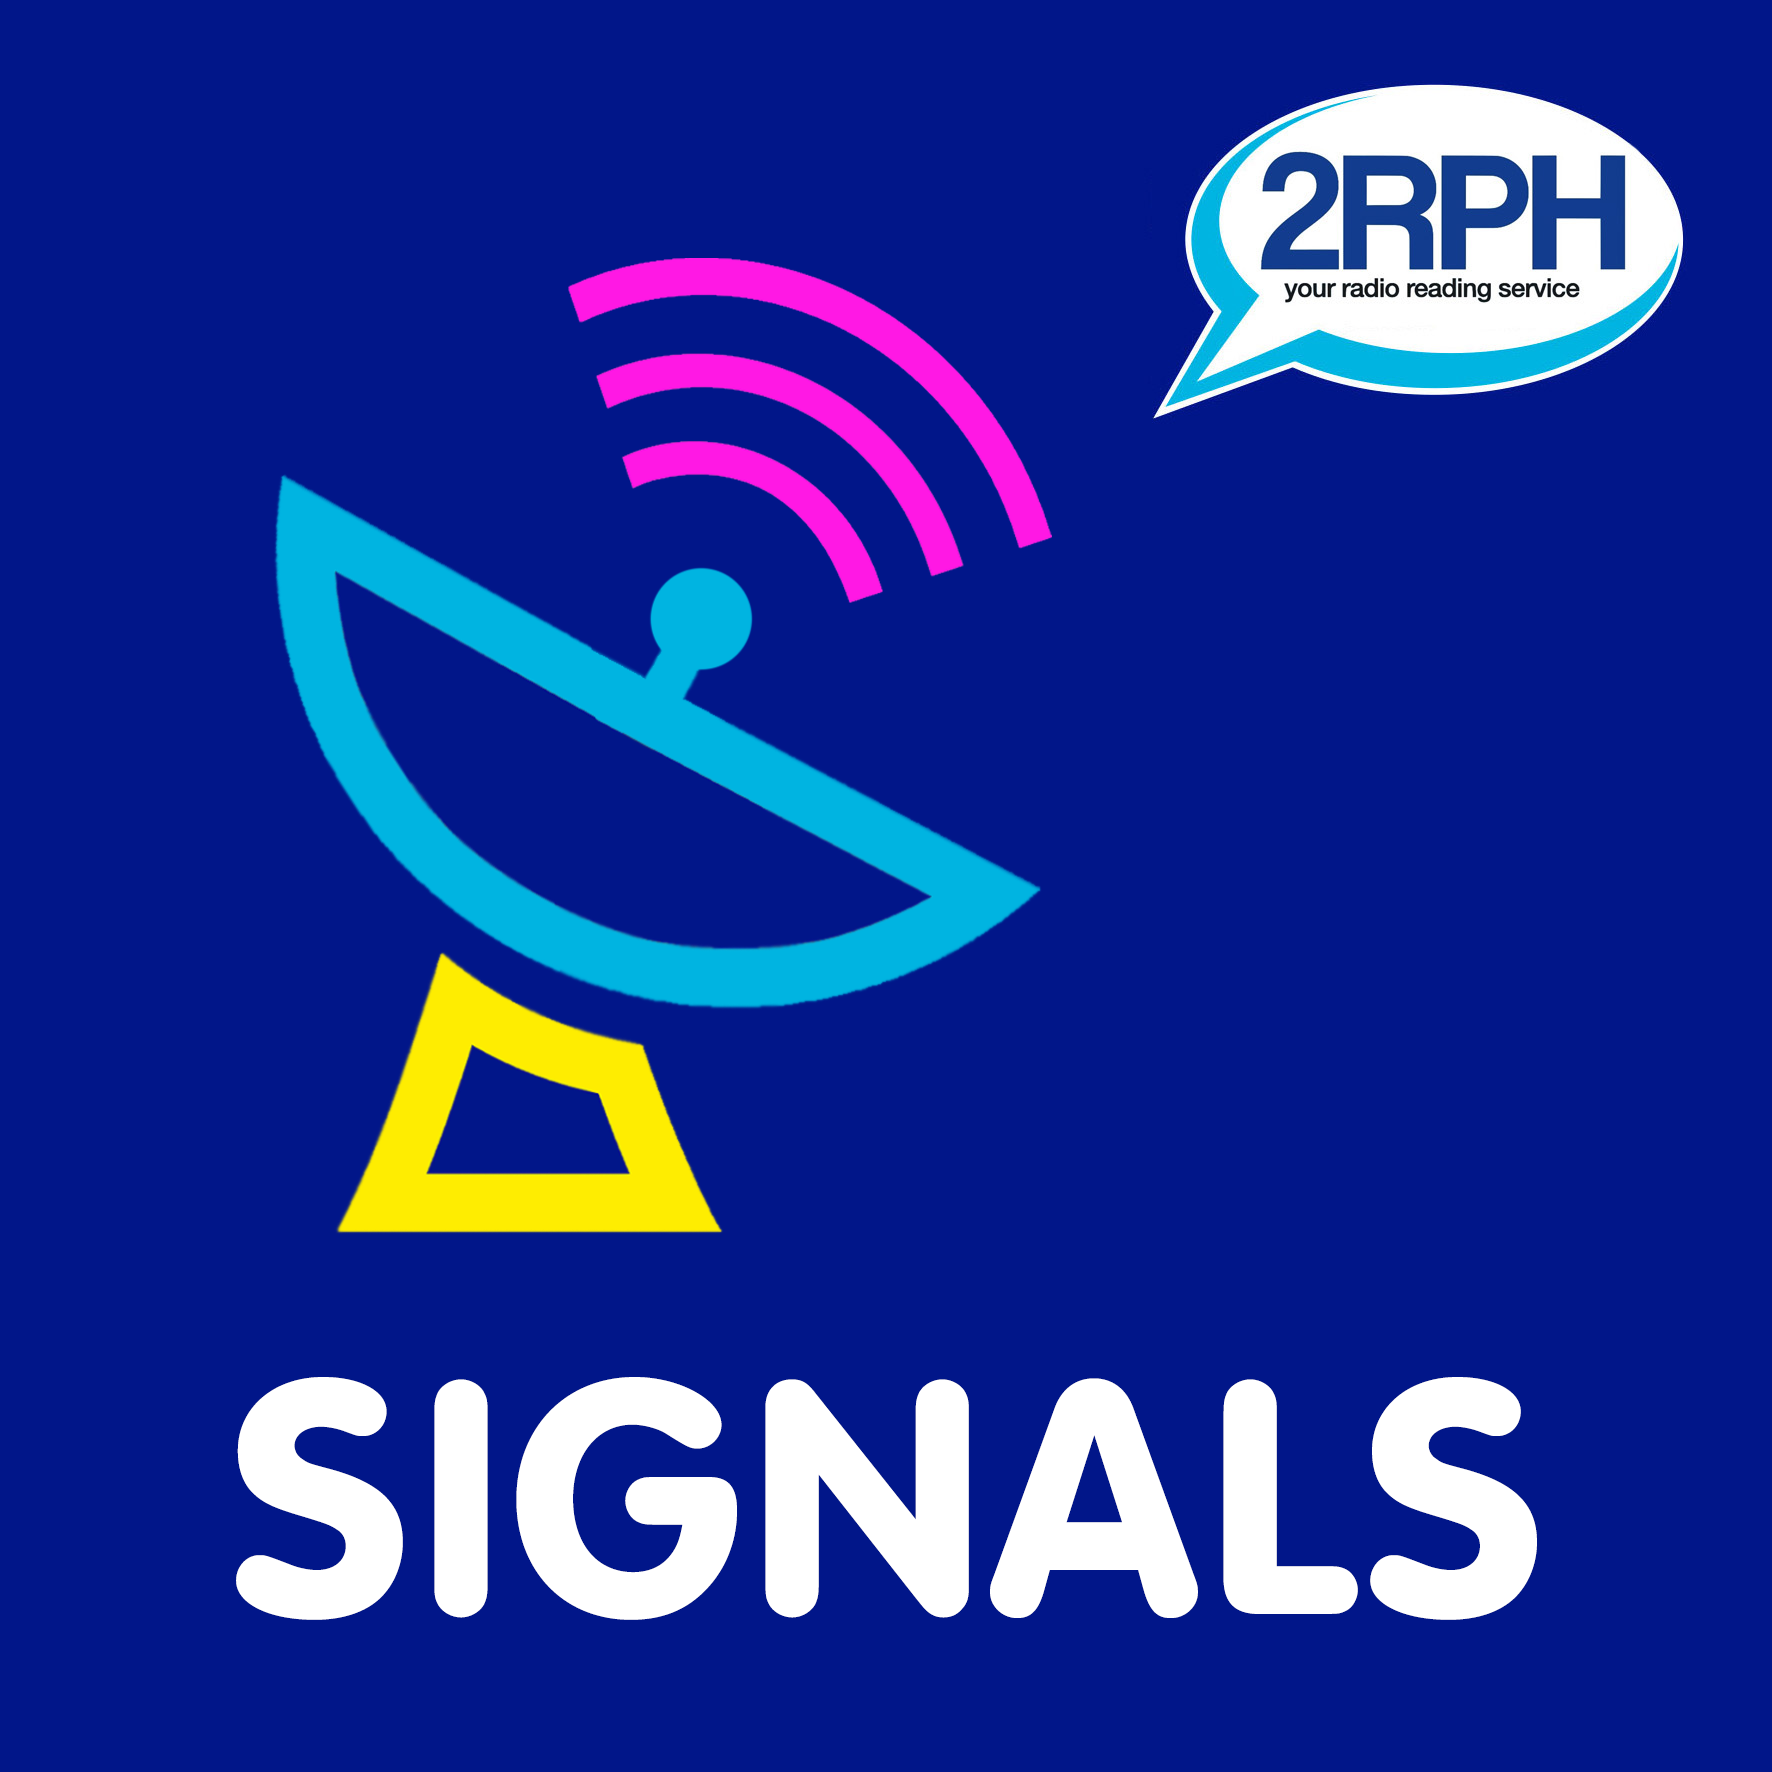 2RPH Signals